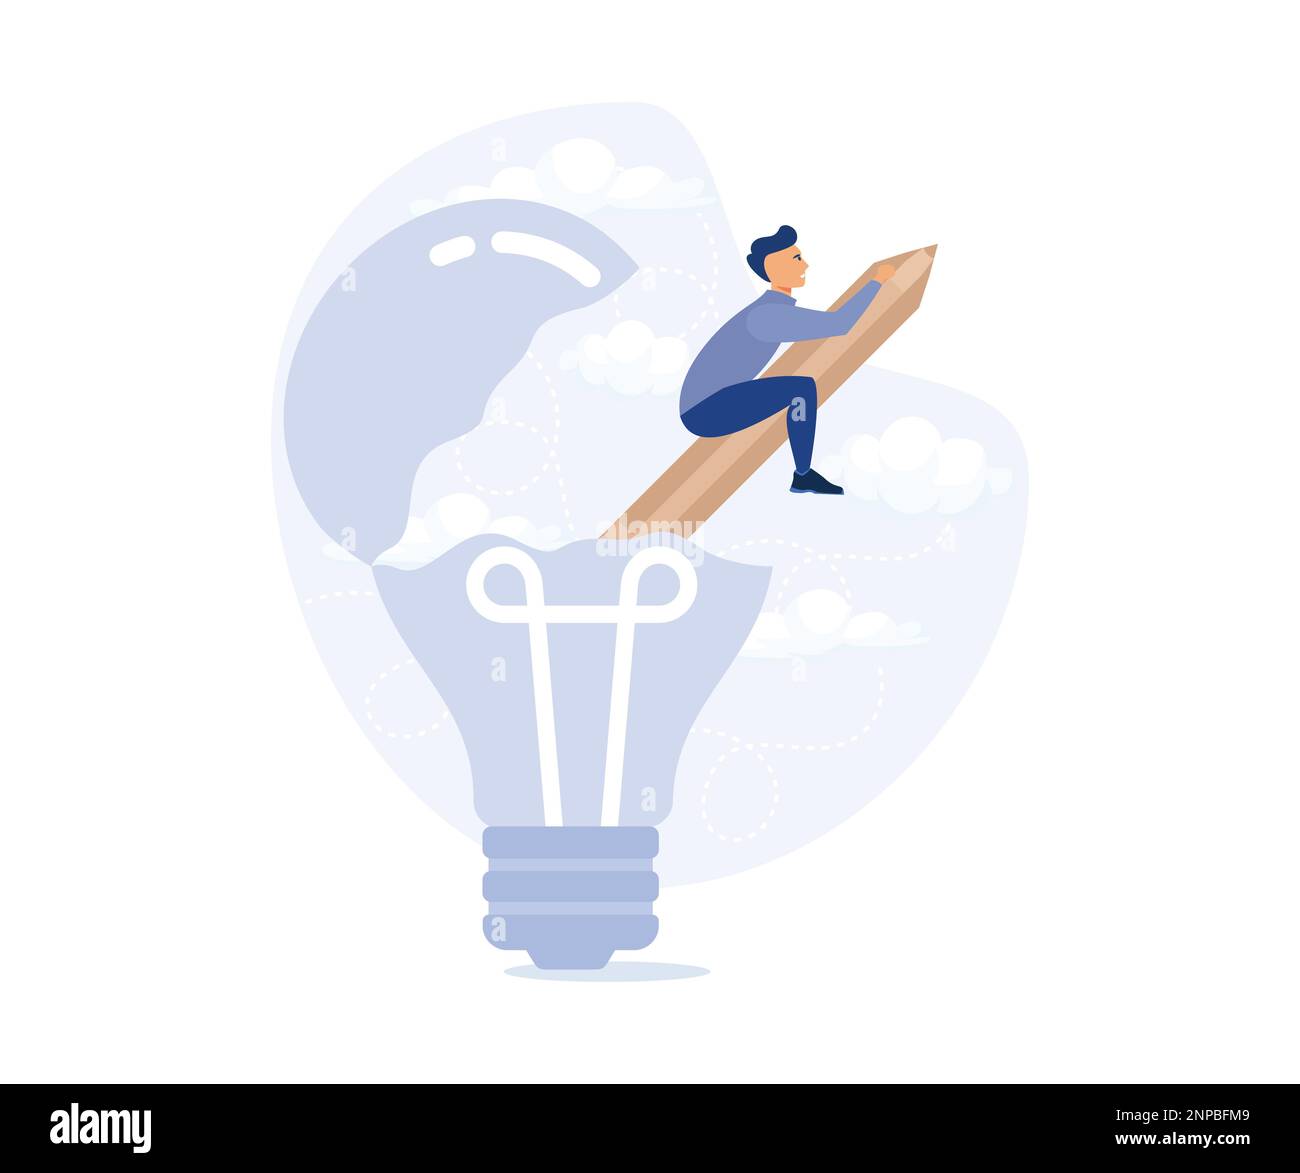 Kreativität um eine neue Idee zu schaffen, reitet ein Mann auf einer Pencil-Rakete aus der öffnenden Glühbirne. Moderne flache Vektordarstellung Stock Vektor